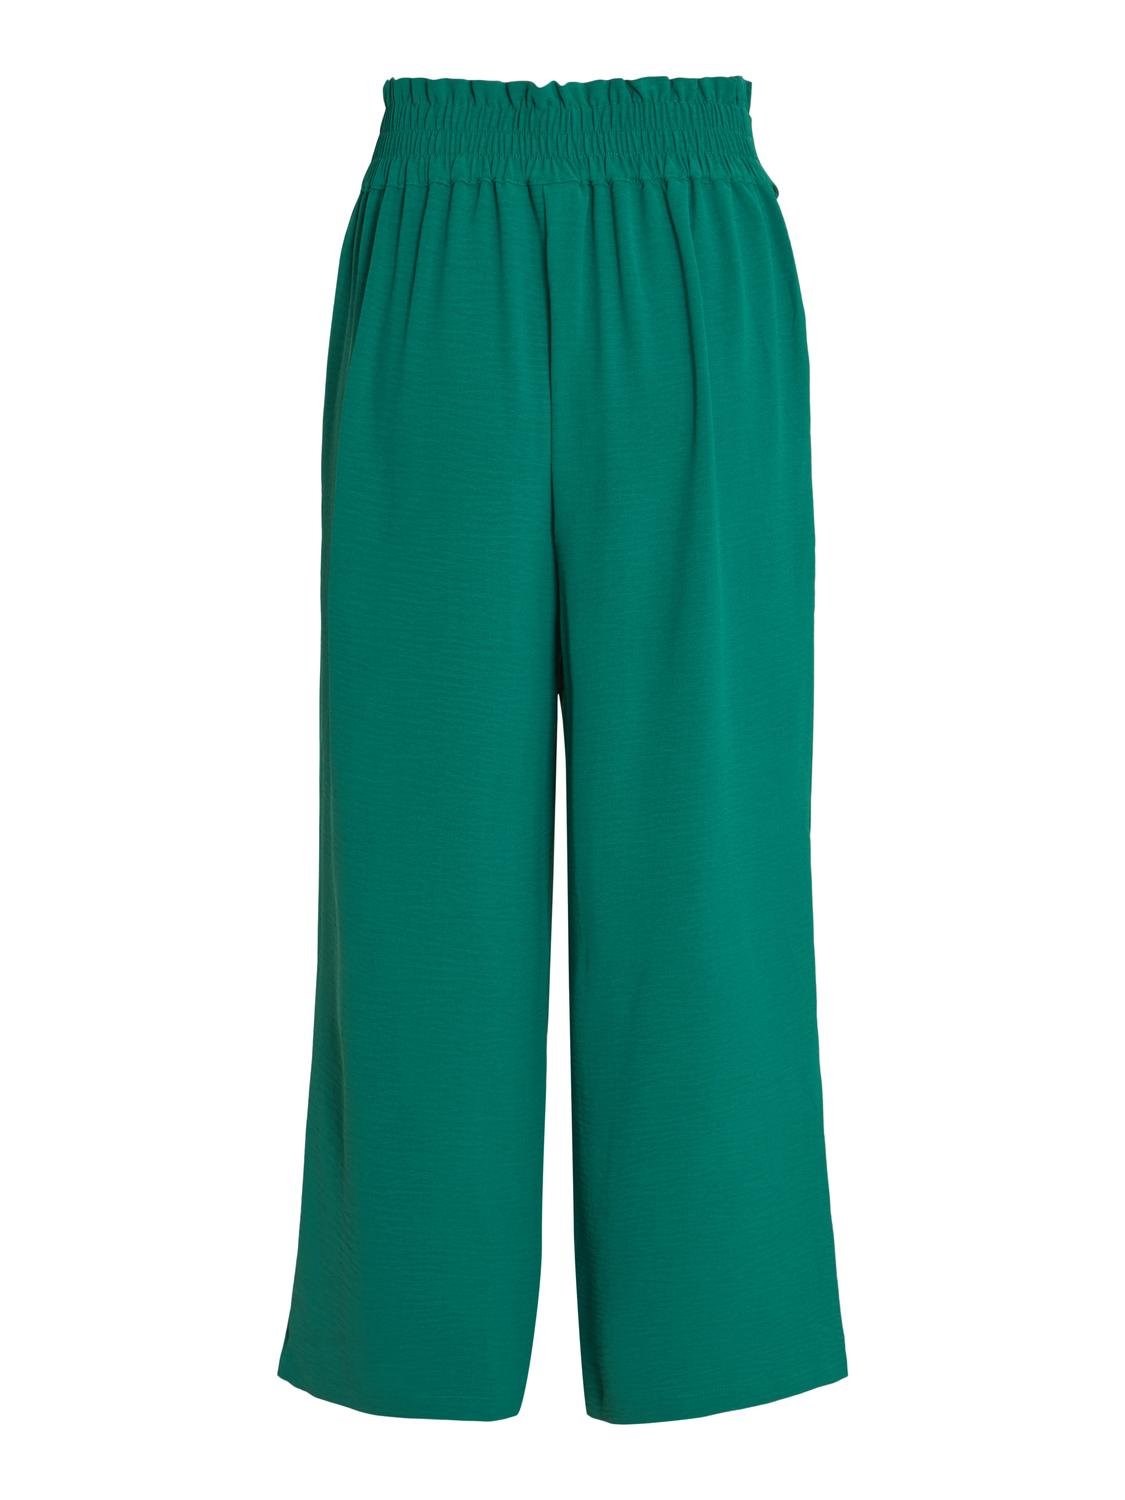 Pantalón Winnie culotte modelo 14092096 en color verde.